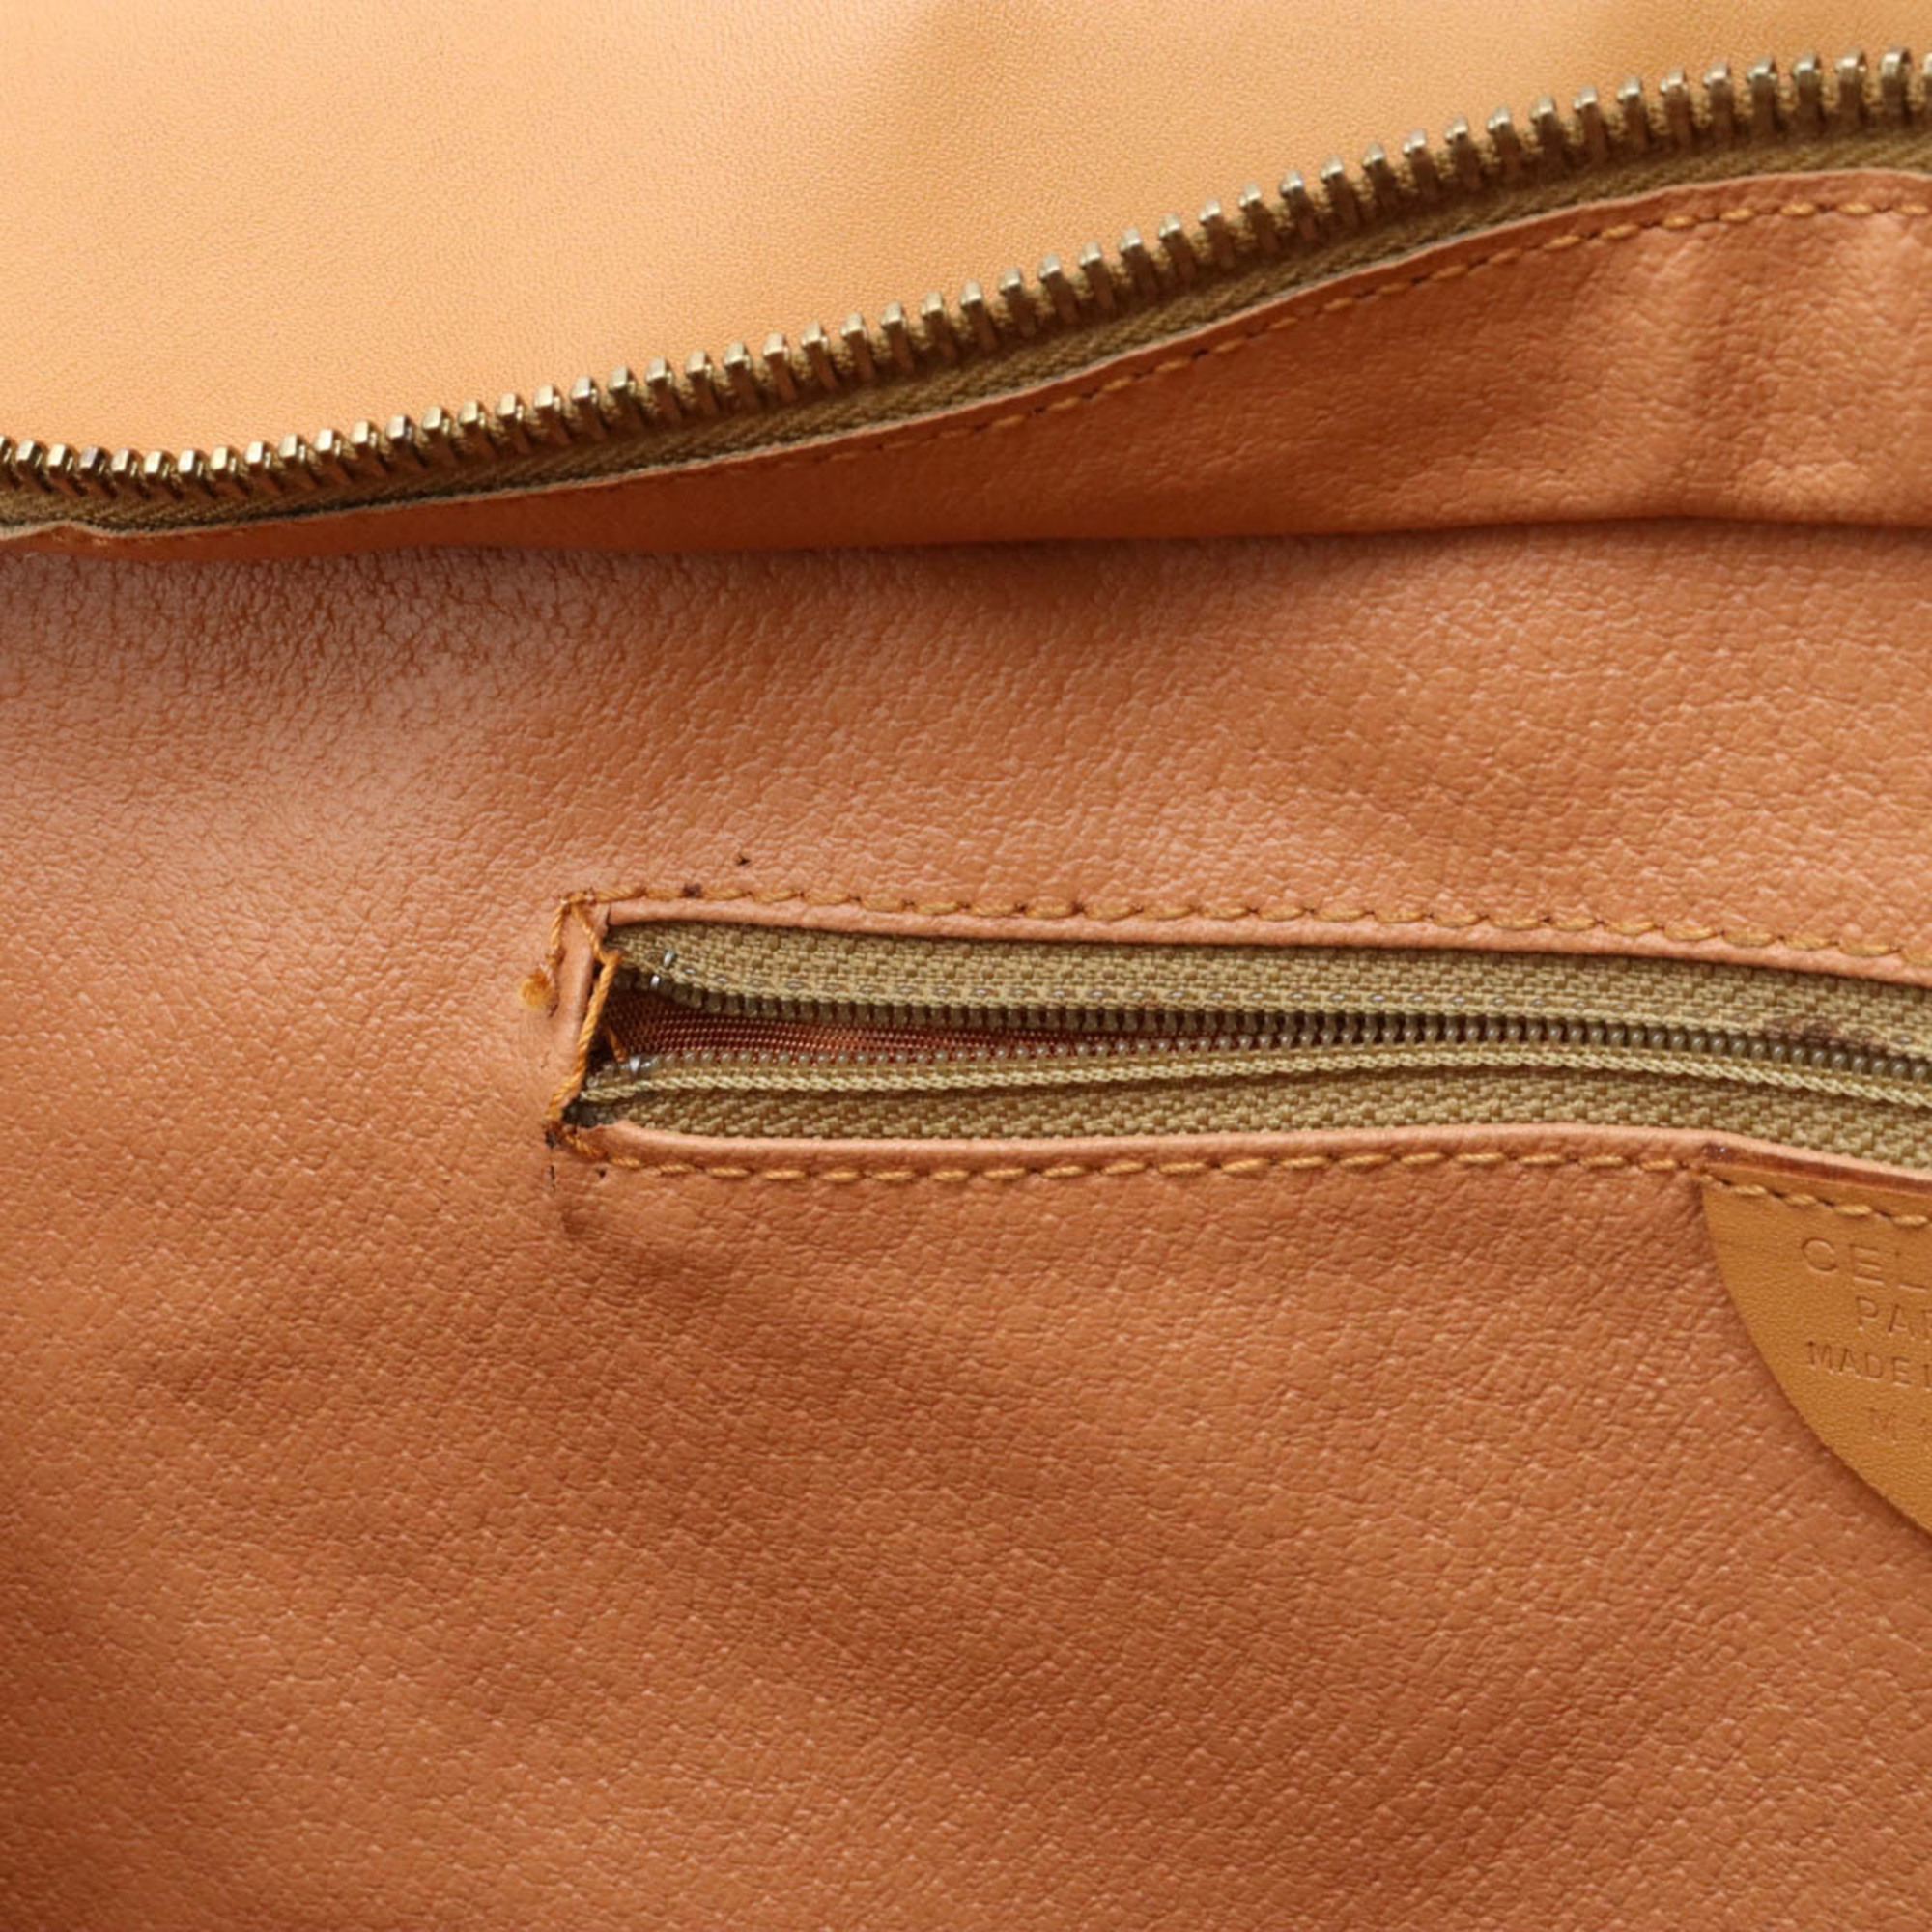 CELINE Macadam Tote Bag Shoulder PVC Leather Dark Brown Beige